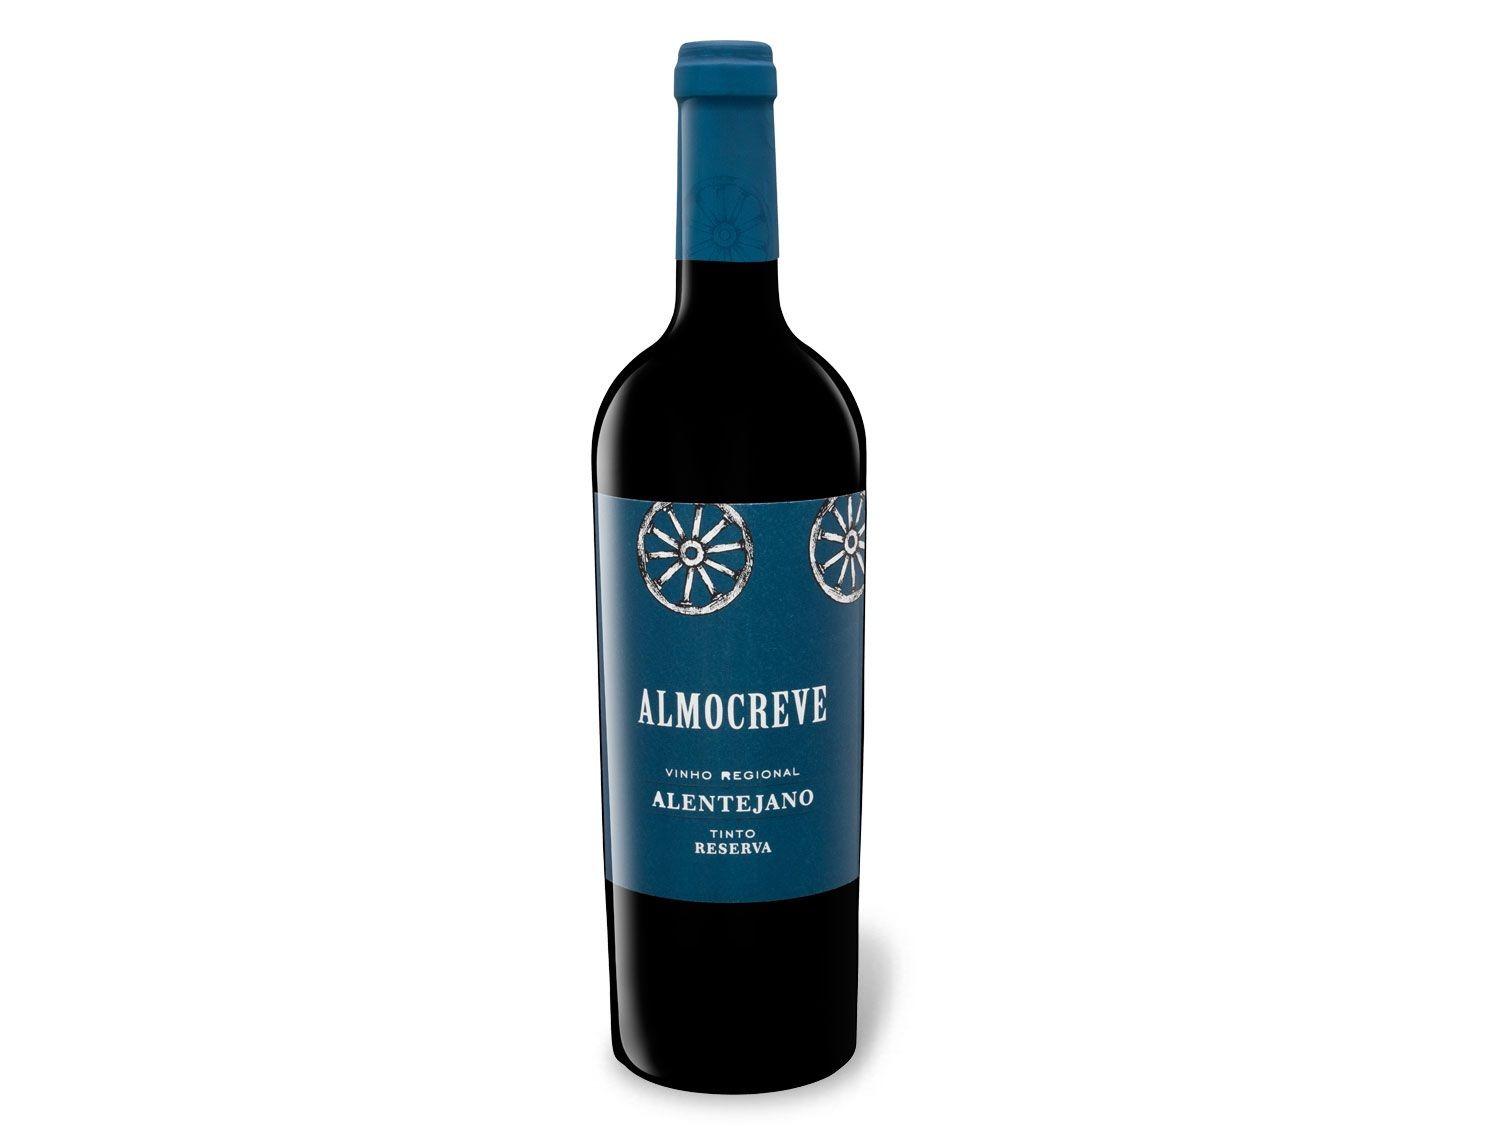 halbtrocke… Regional Vinho Alentejano Reserva Almocreve